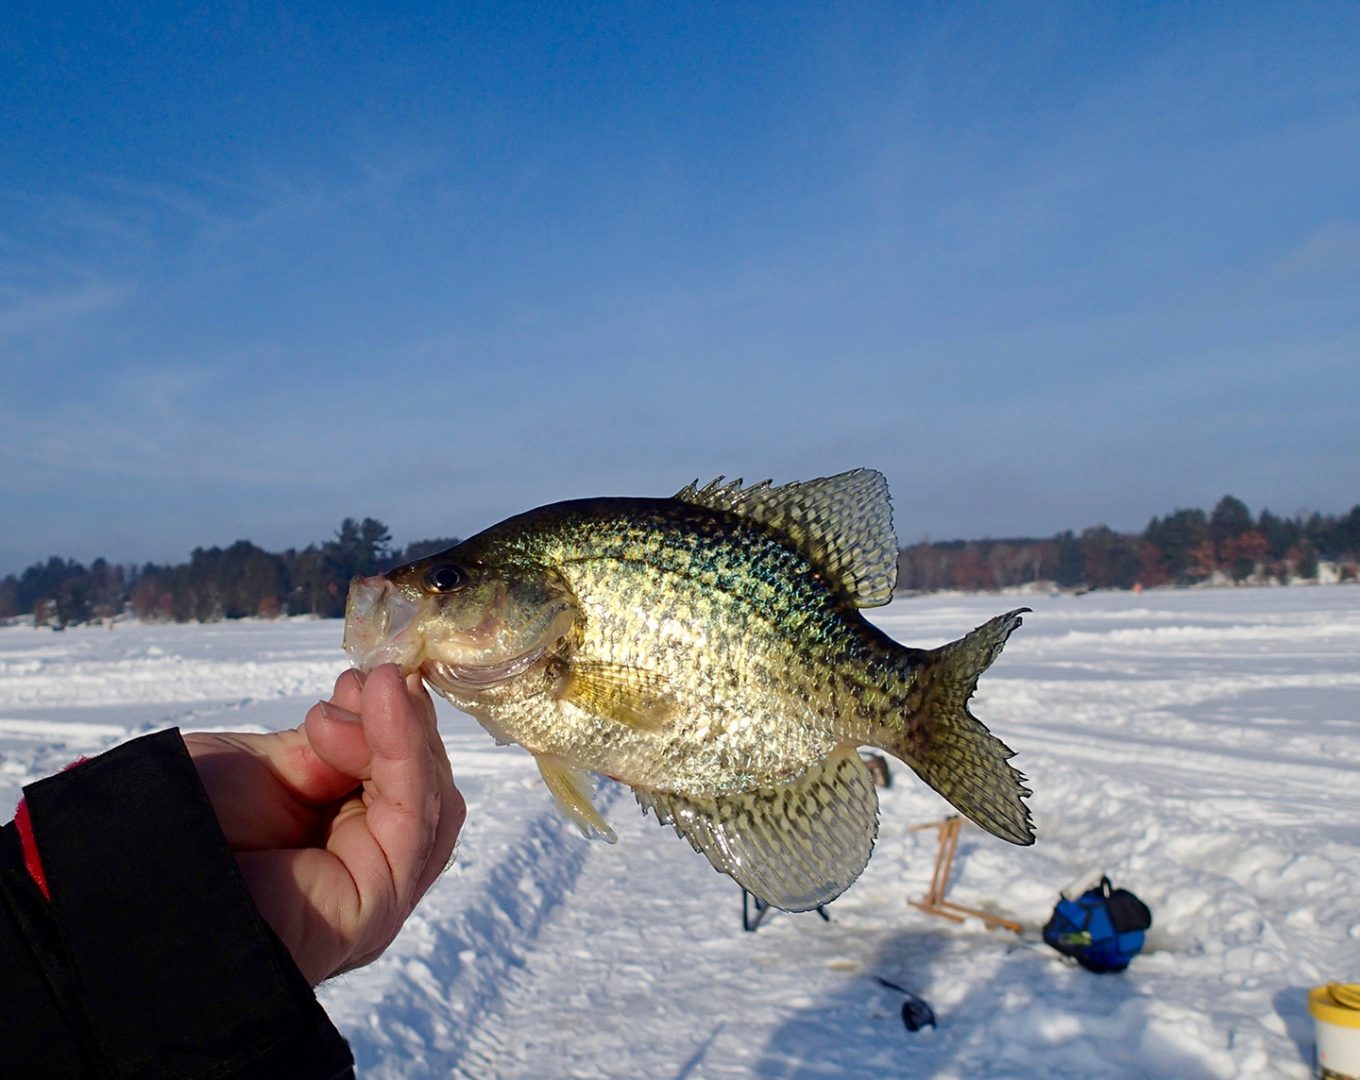 Caught Fish On Ice